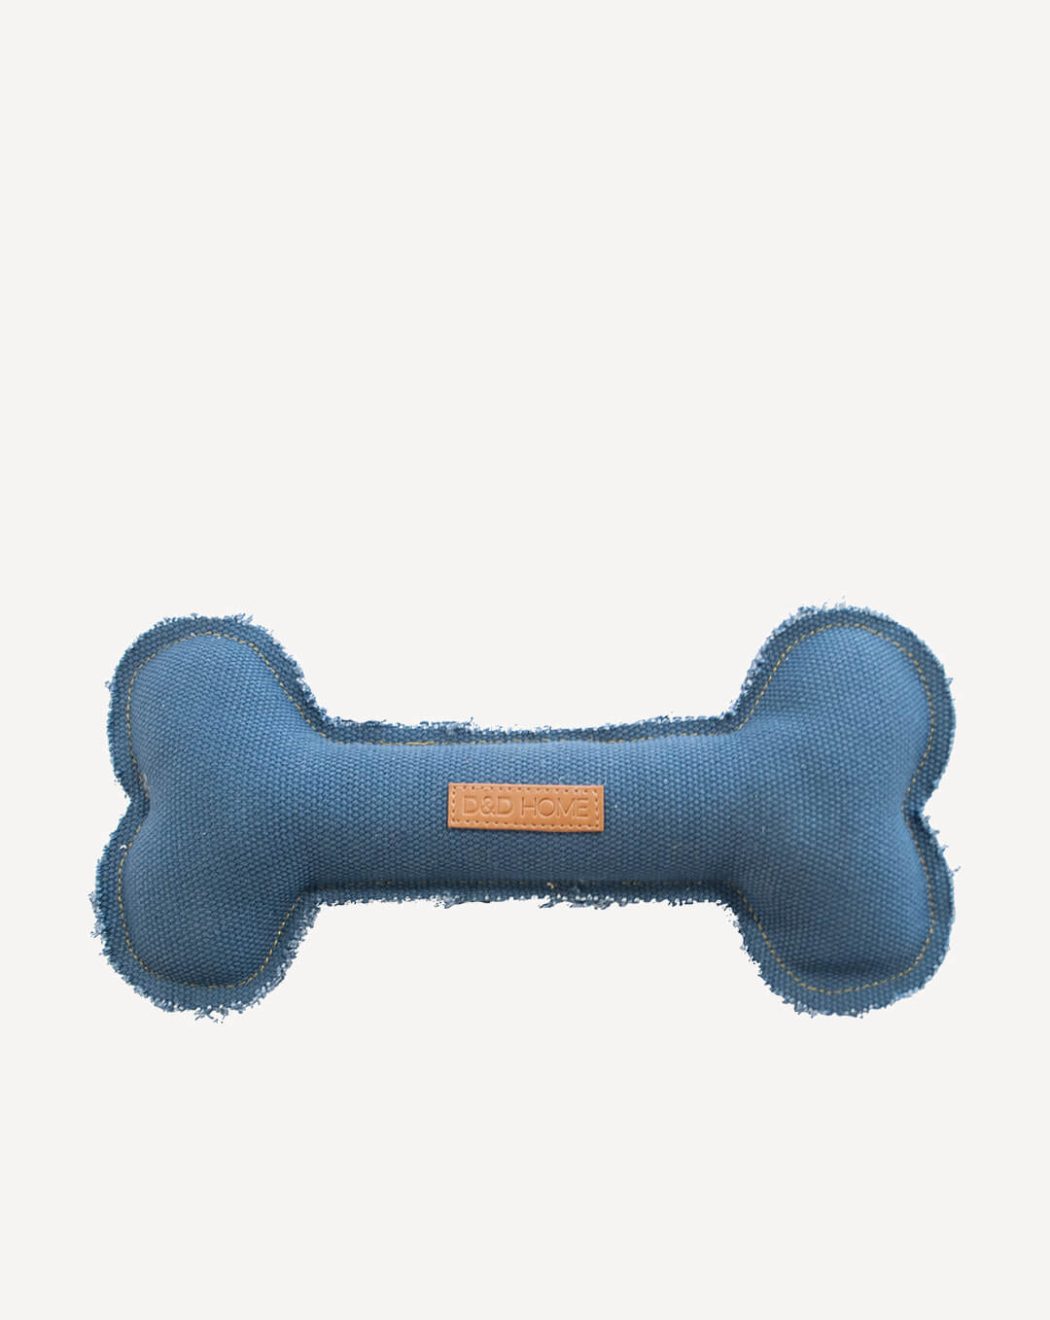 Hundespielzeug blauer Knochen aus Stoff. Die Kanten sind unversäubert.